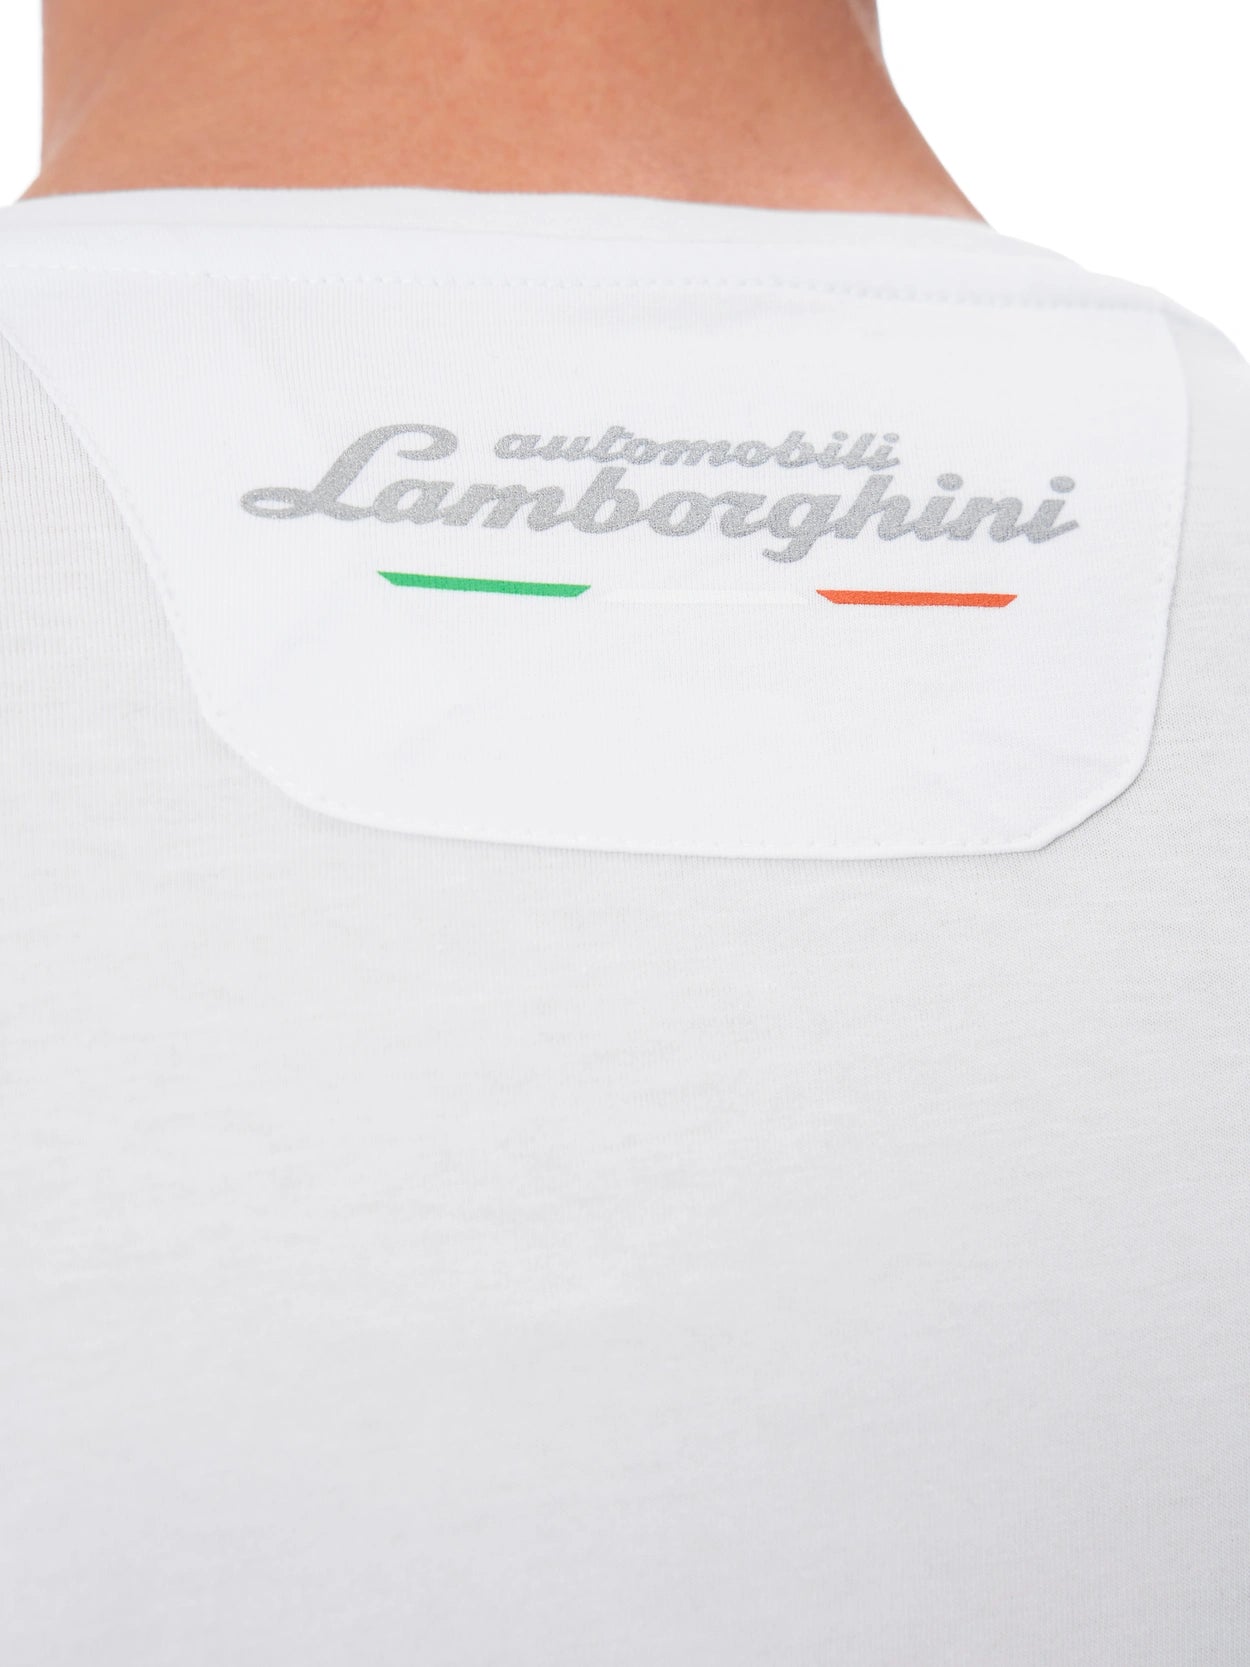 Automobili Lamborghini 60th Anniversary Crew Neck Tee - White